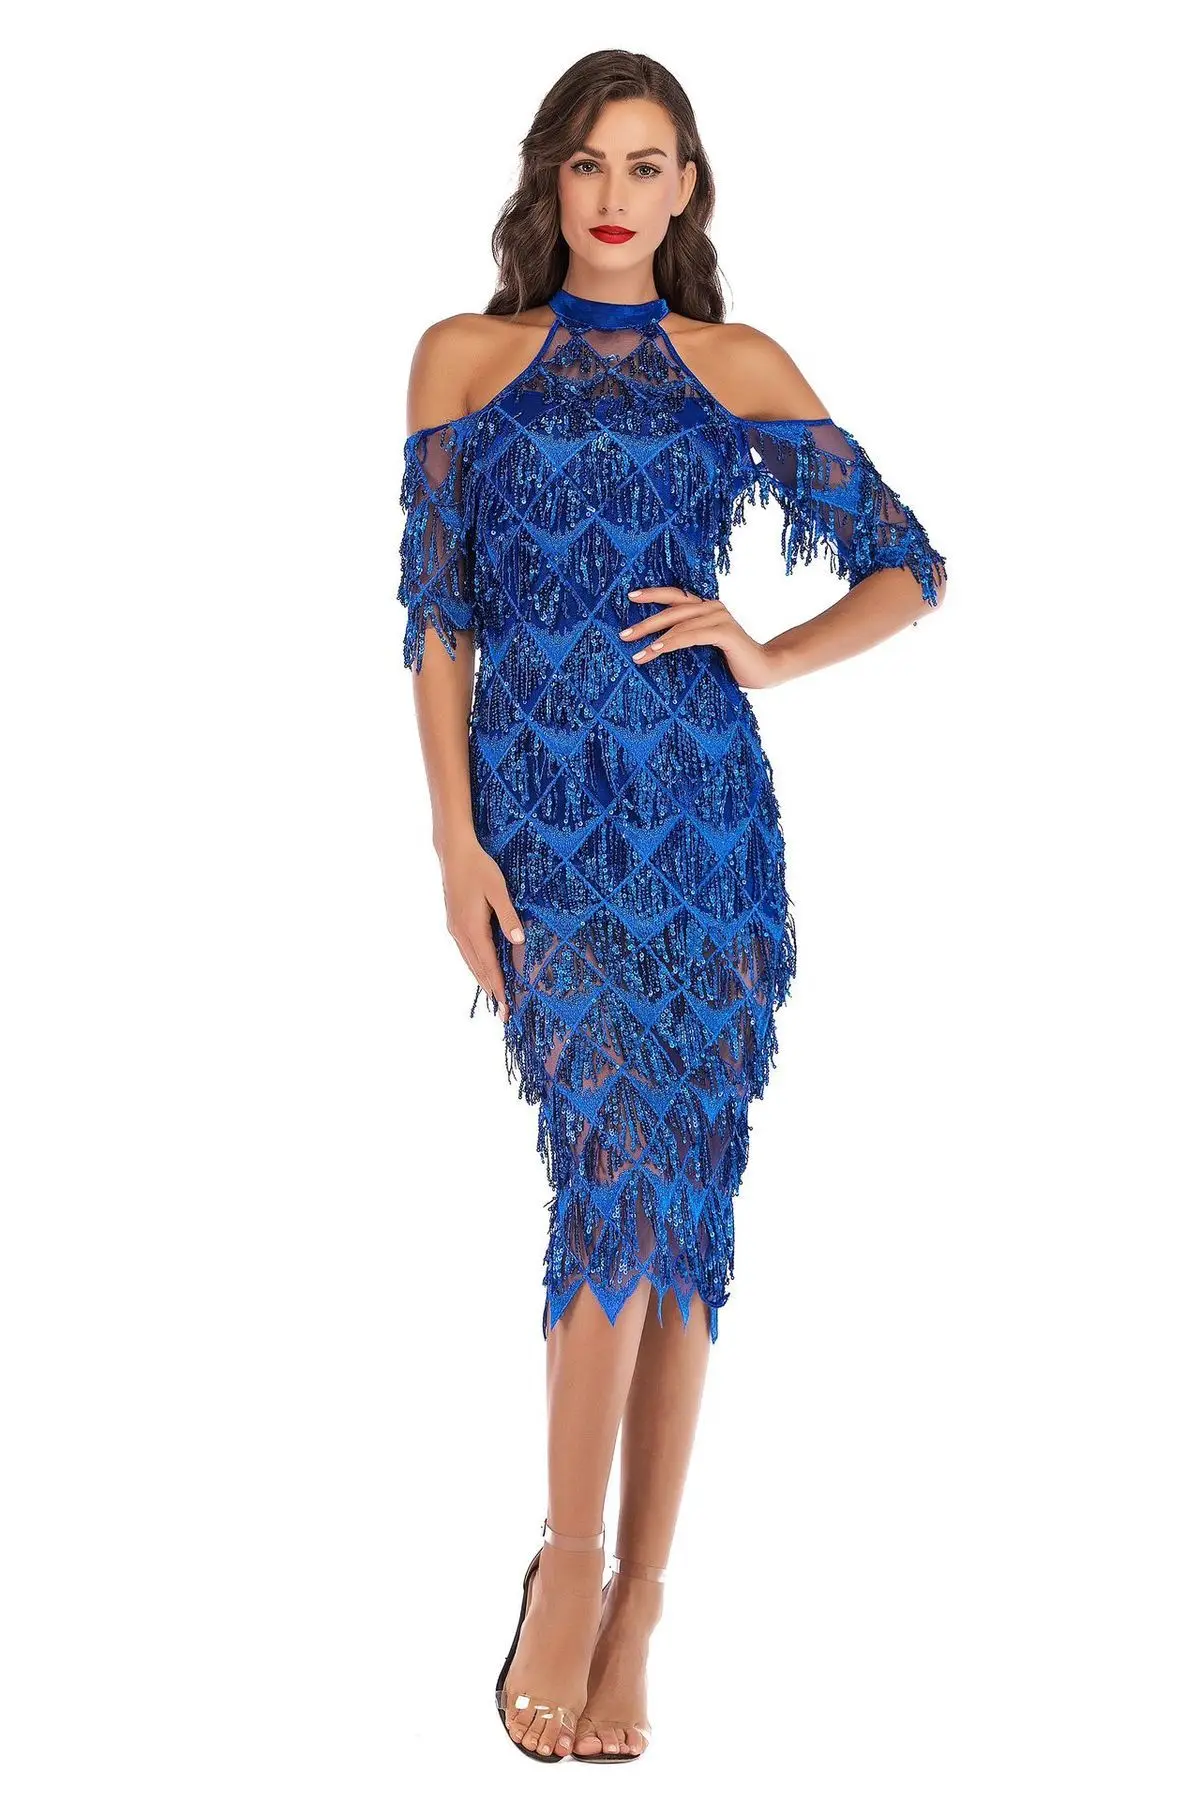 DRESSMECB, Осенние вечерние платья, элегантные платья миди с блестками и кисточками, женские рождественские платья с открытыми плечами и разрезом, Vestidos - Цвет: Blue